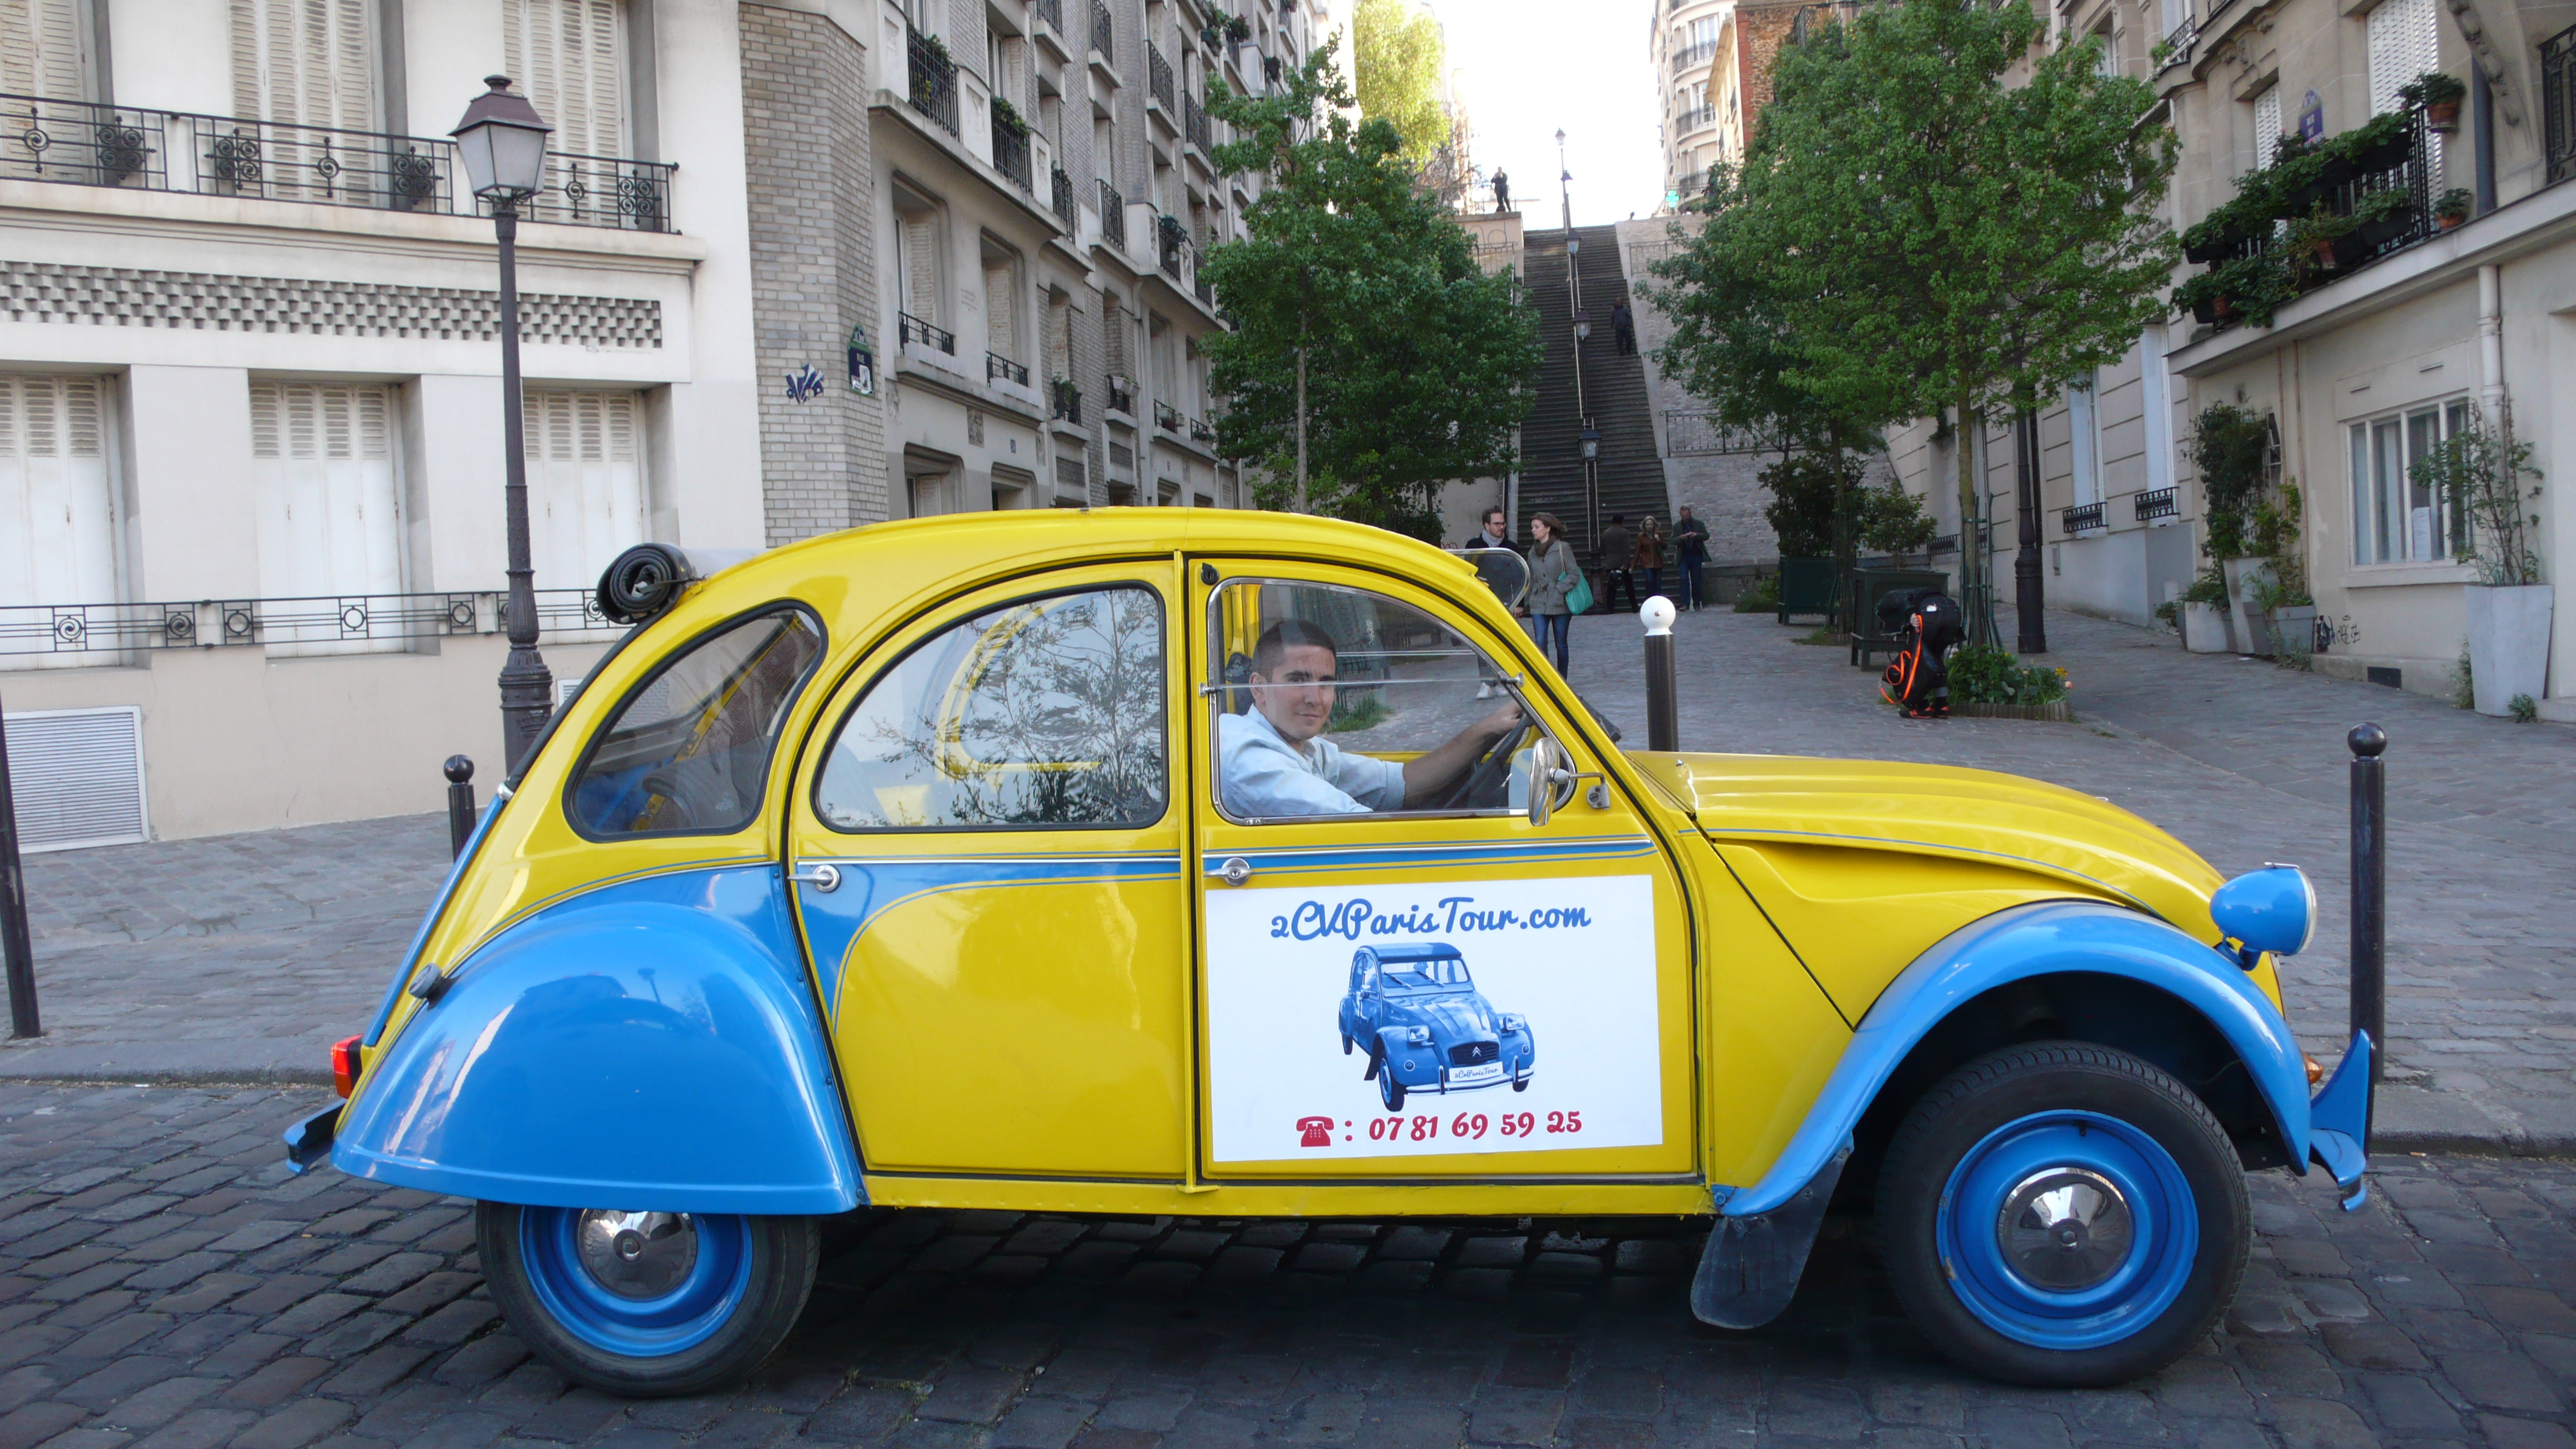 2CV Paris Tour : Visit Paris by 2CV! Let's start a tour of Montmartre!